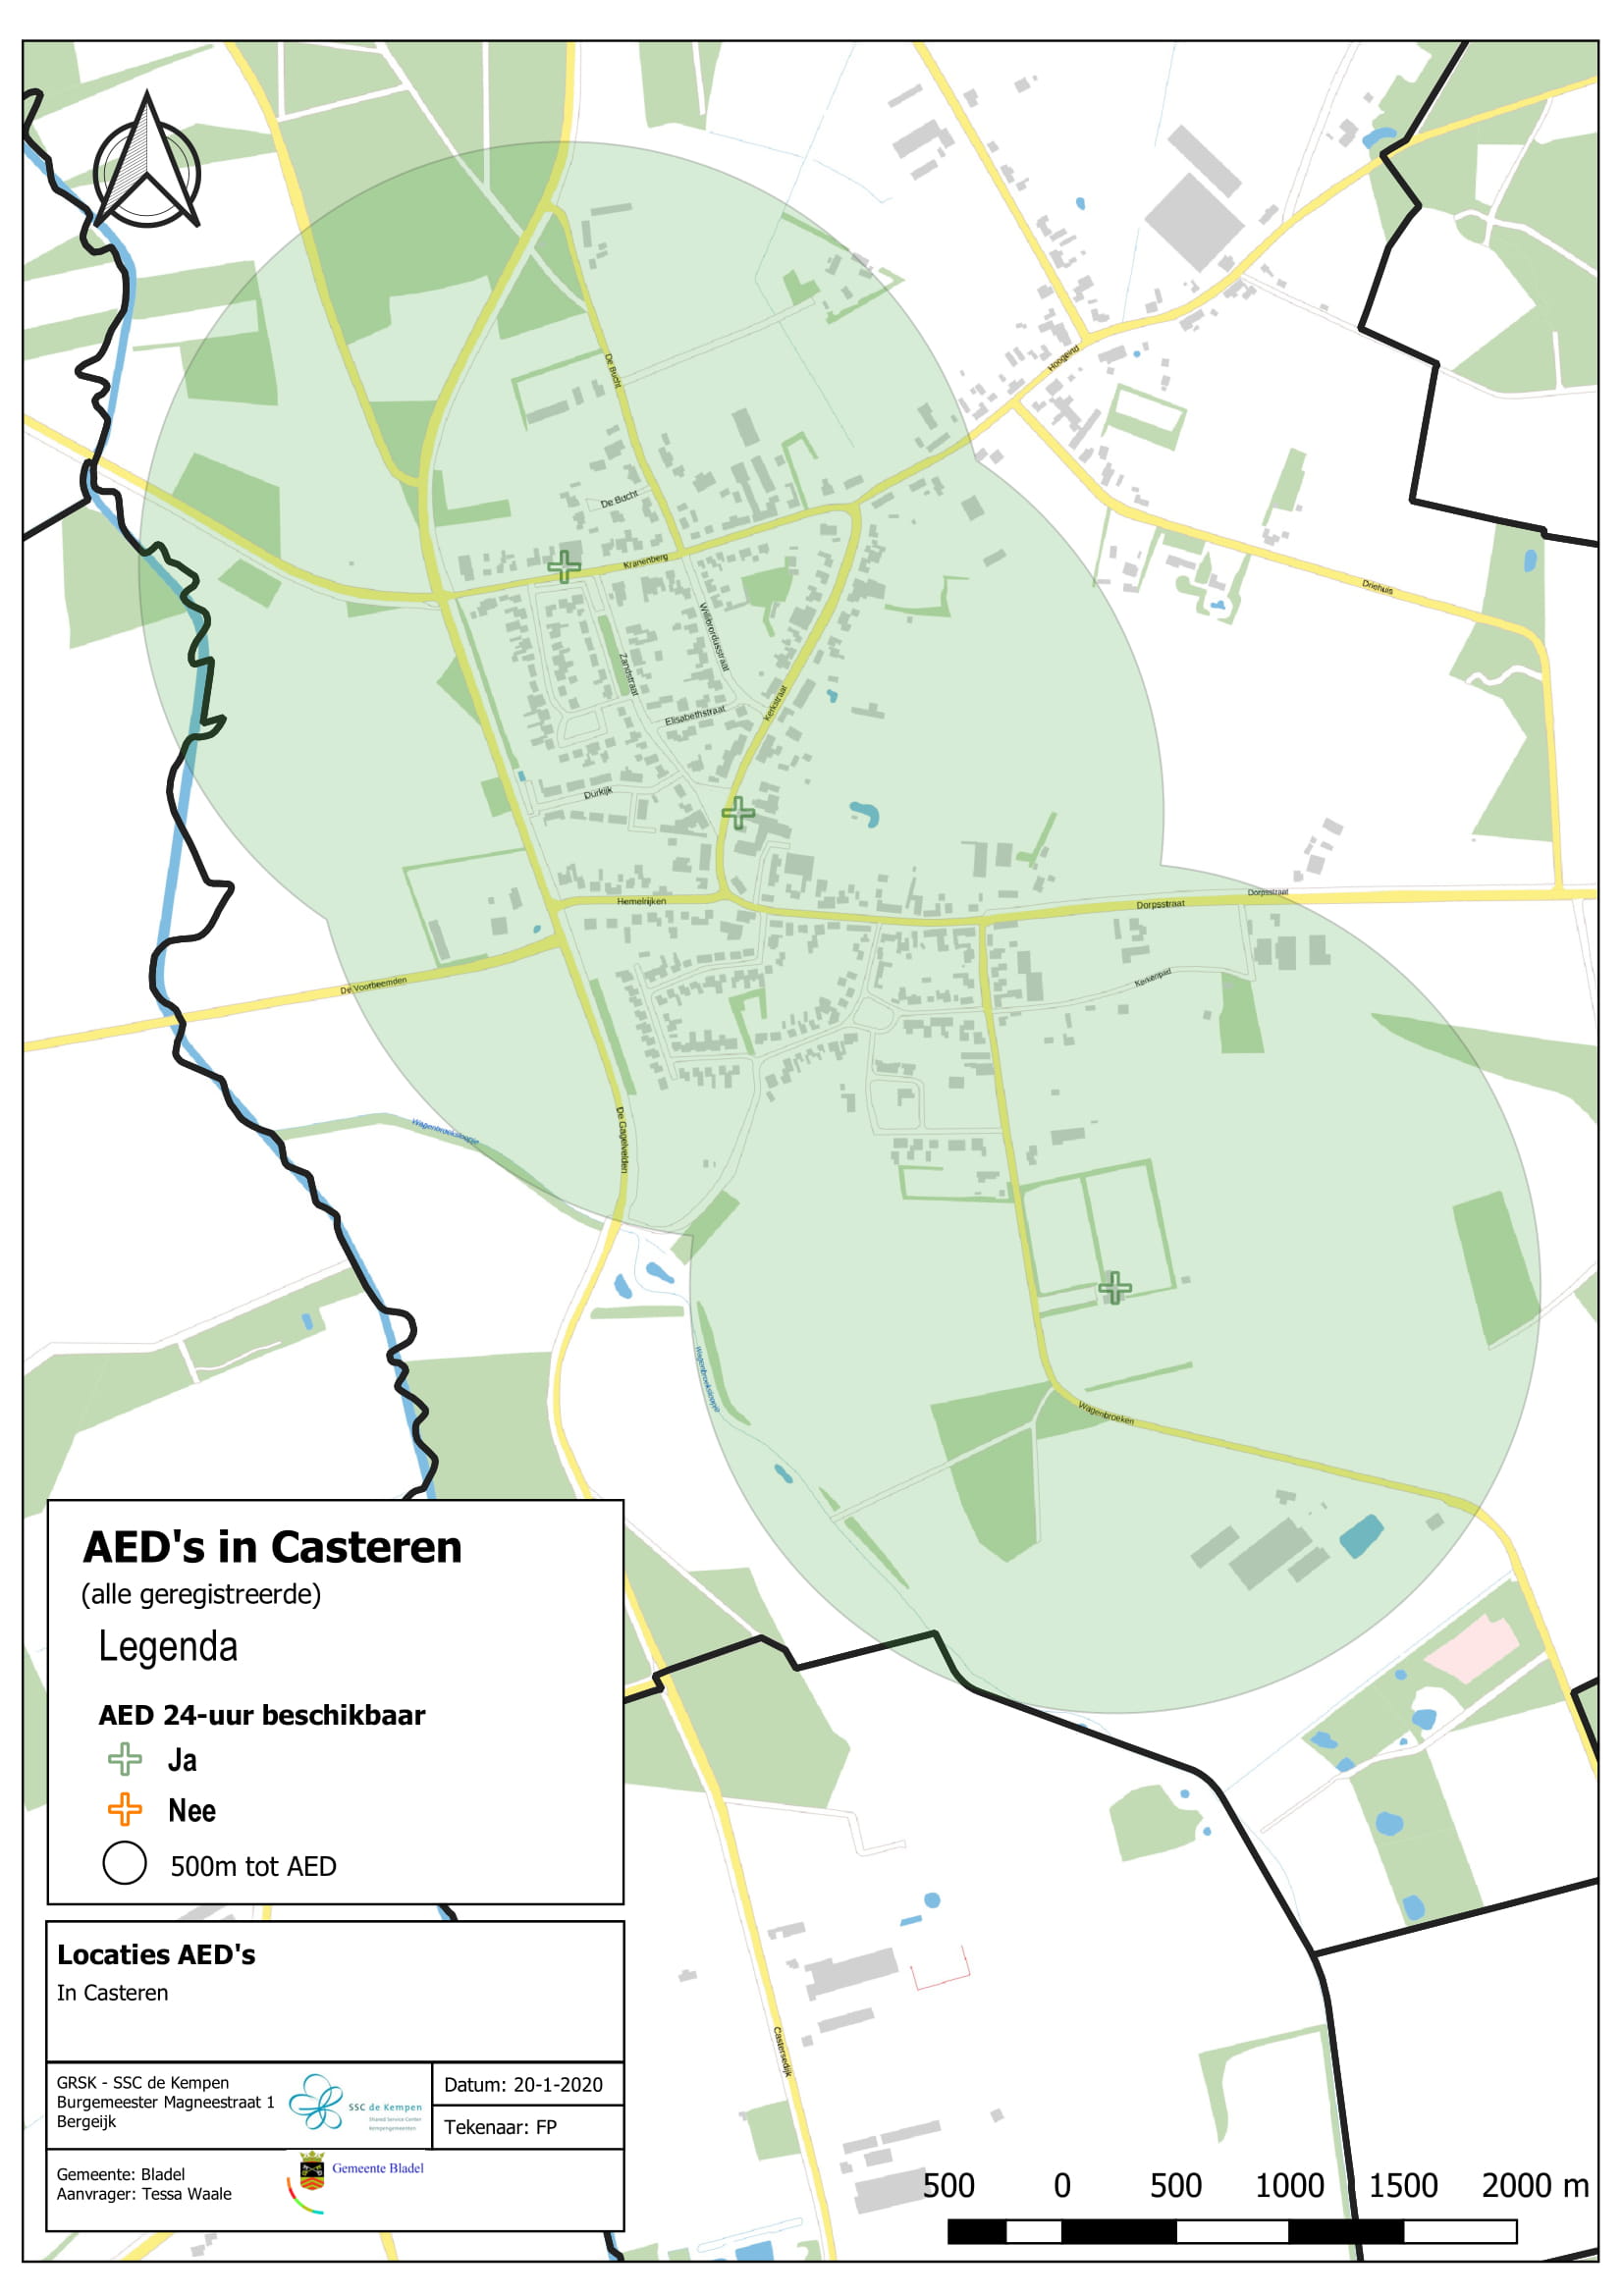 De geregistreerde AED's in Casteren. De AED's zijn 24/7 beschikbaar.